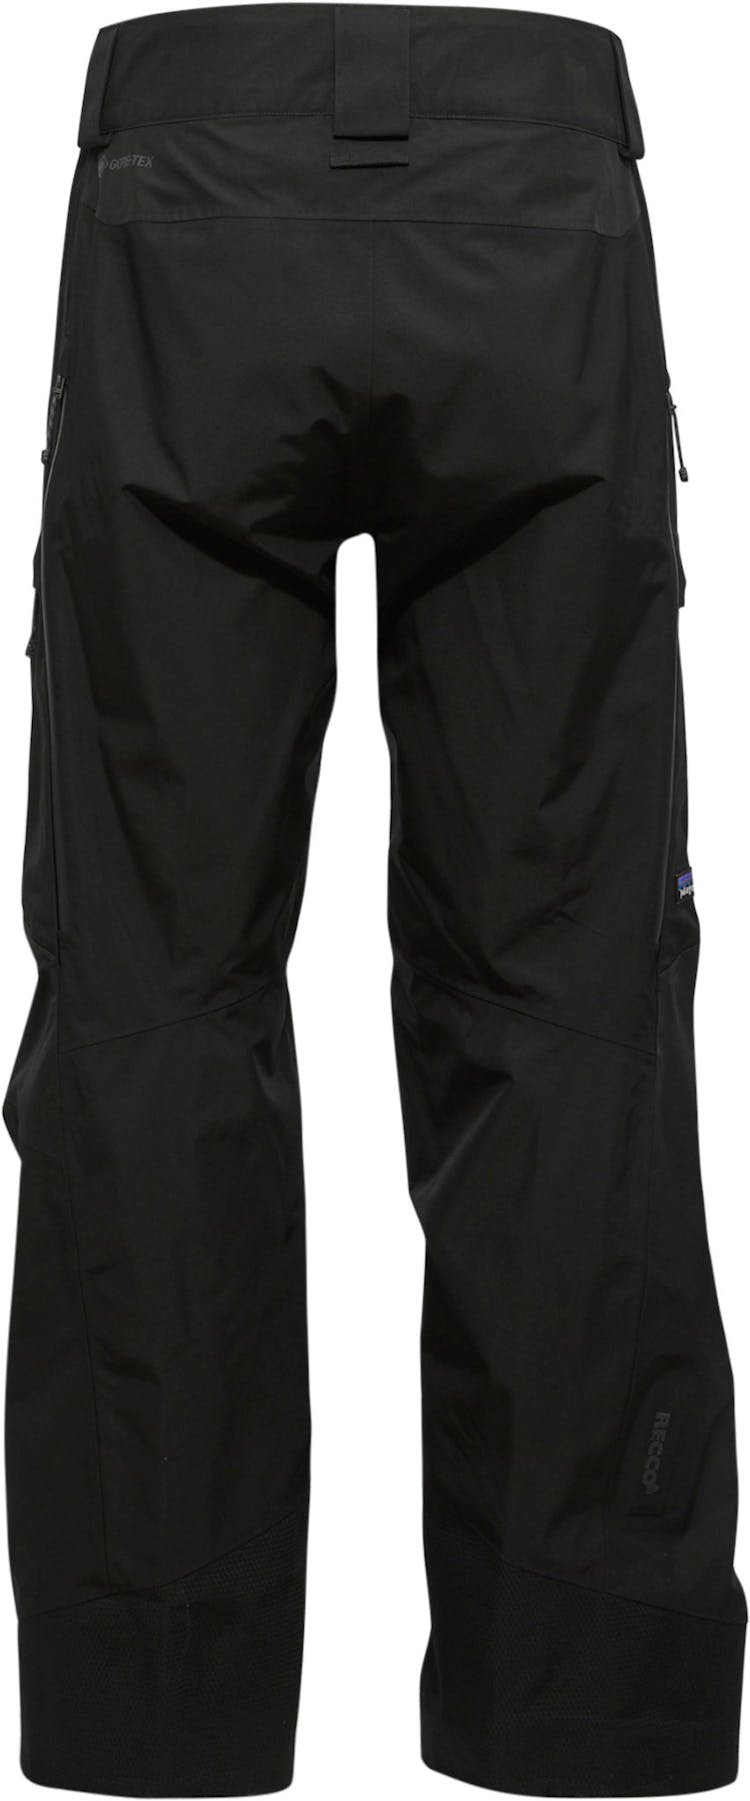 Numéro de l'image de la galerie de produits 5 pour le produit Pantalon coupe régulière Storm Shift - Homme